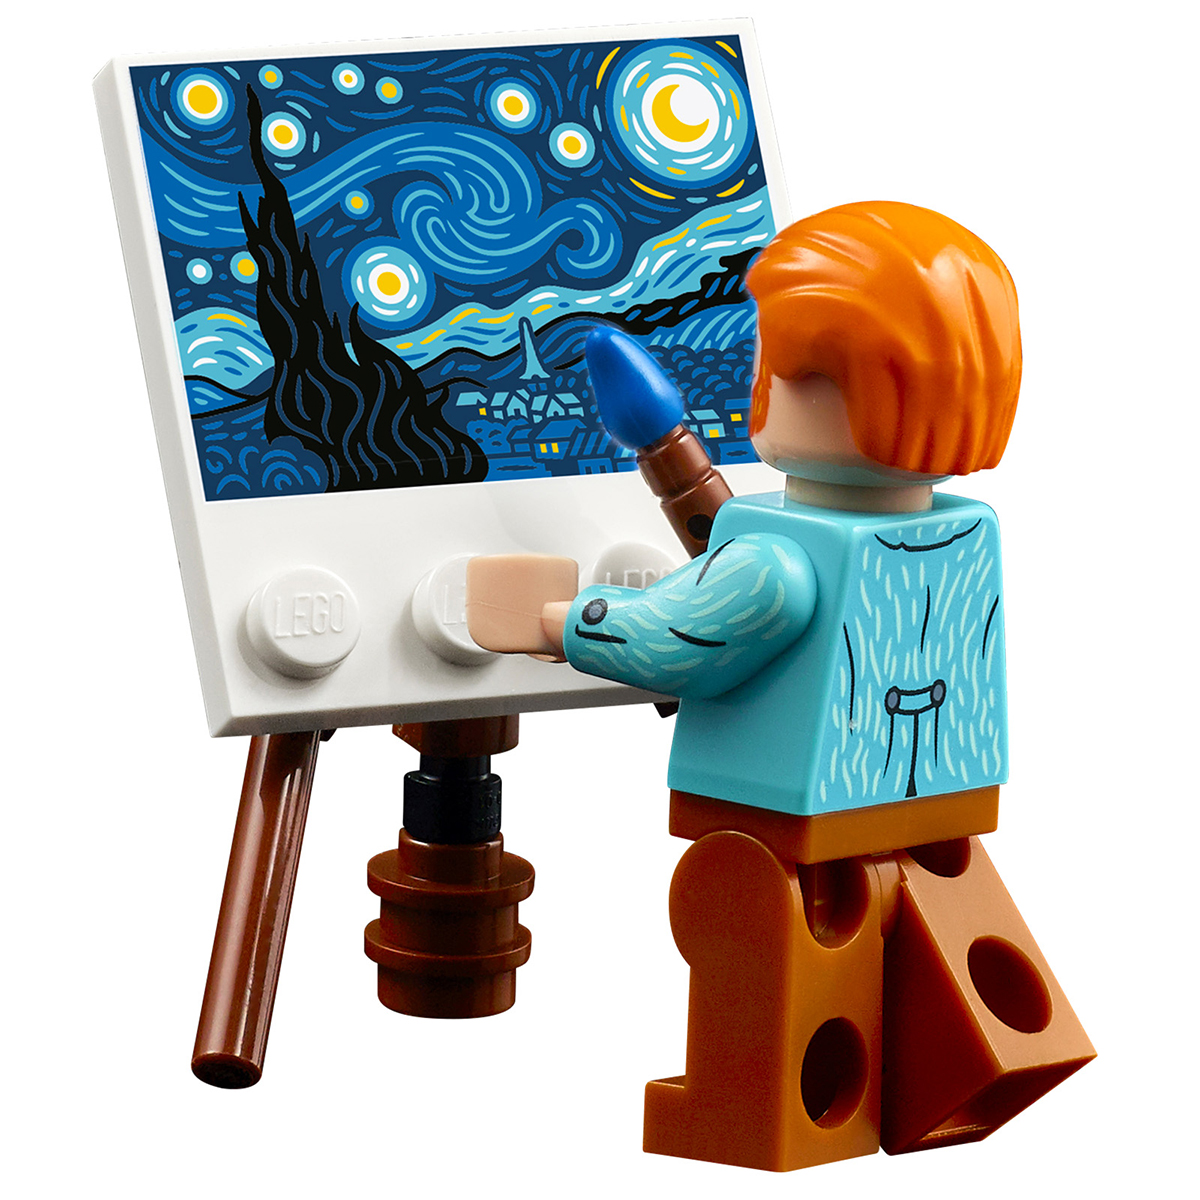 LEGO - Vous avez reconnu ces tableaux en 3D ? 🖼️ Quel est